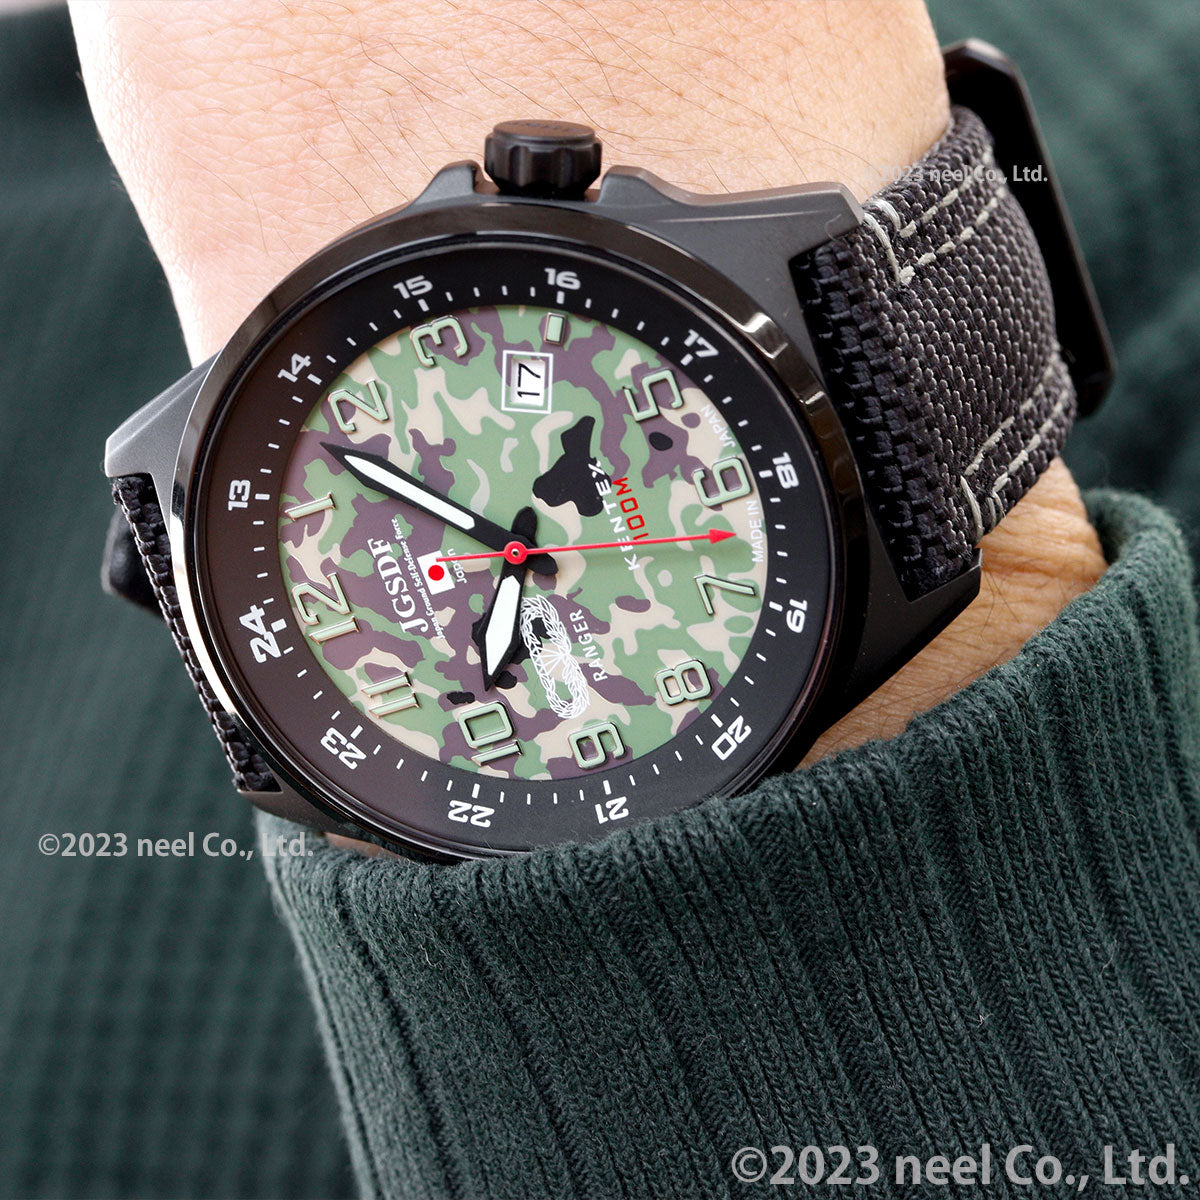 ケンテックス KENTEX JSDF 陸上自衛隊モデル 腕時計 時計 メンズ 日本製 S715M-8